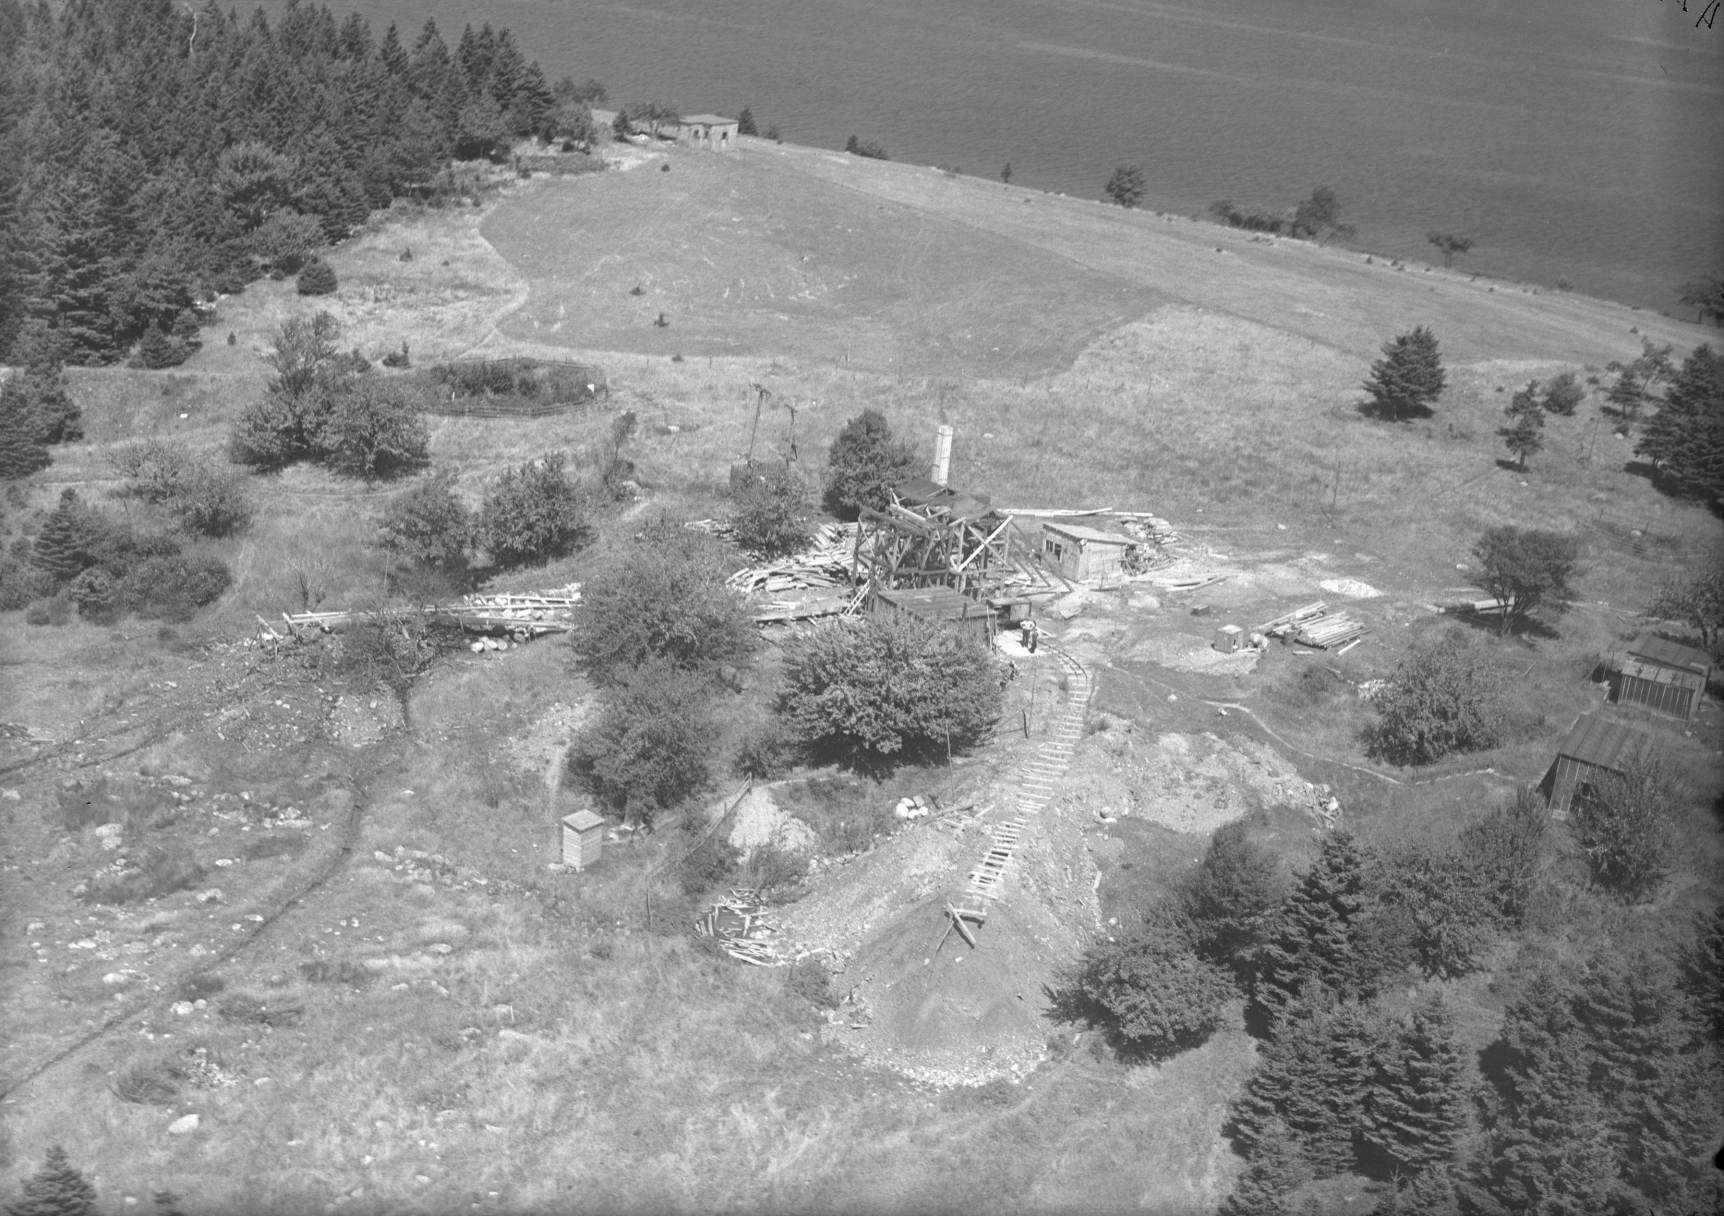 O fotografie a fost făcută în august 1931 la Oak Island din Nova Scotia, Canada. A descris diverse săpături și construcții.